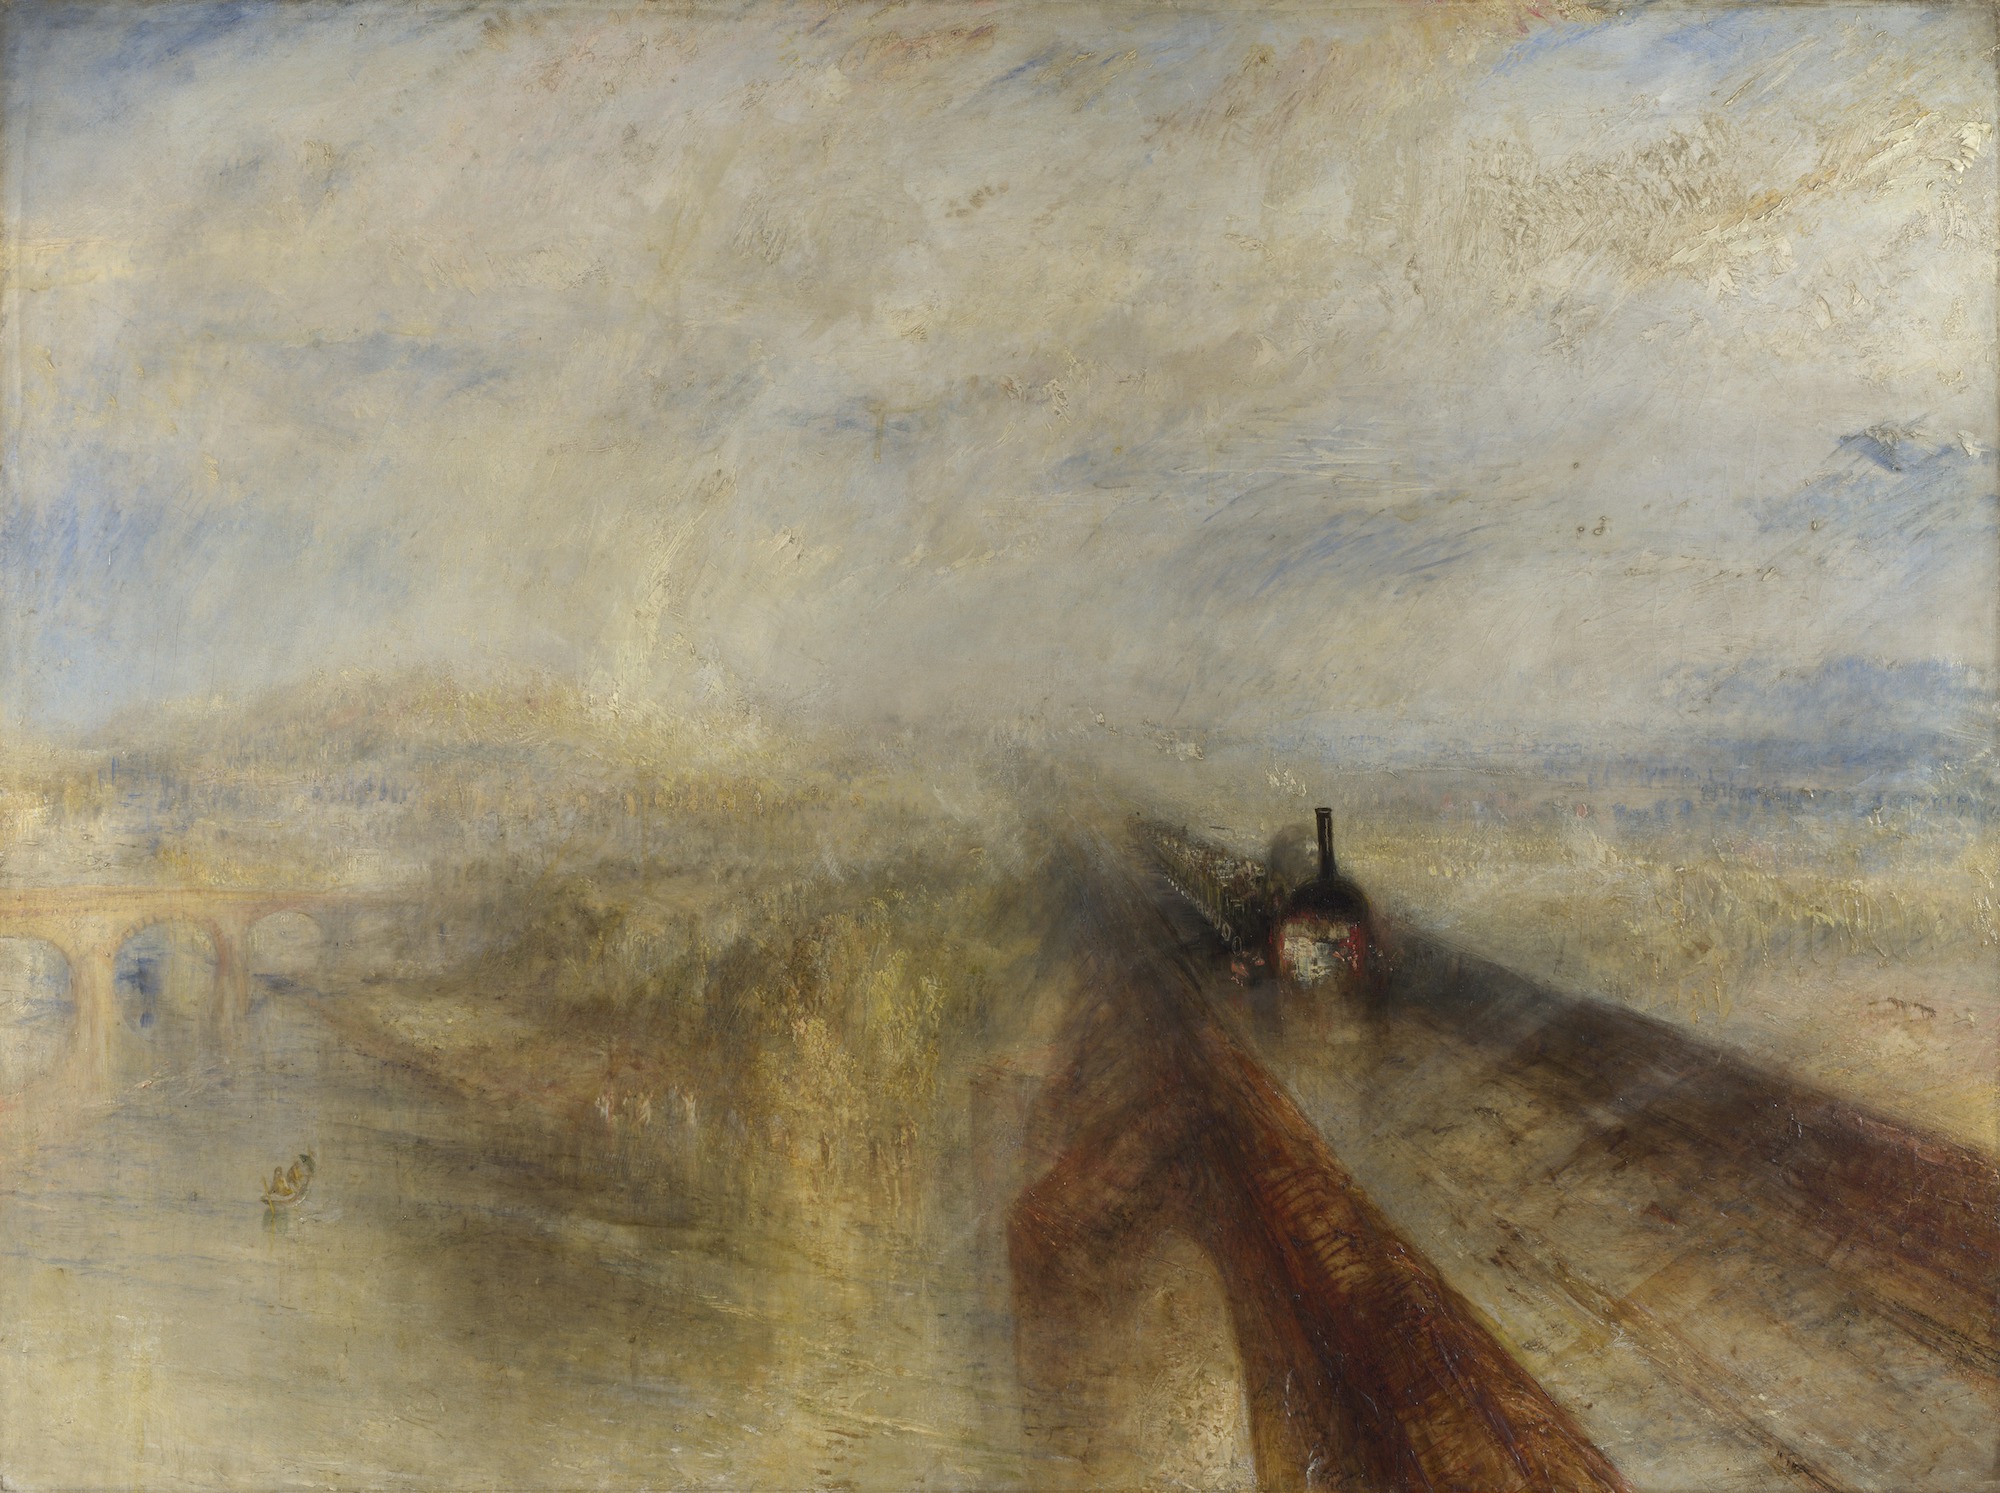 雨，蒸汽和速度—西部大鐵路 by Joseph Mallord William Turner - 1844 - 91 x 122 厘米 